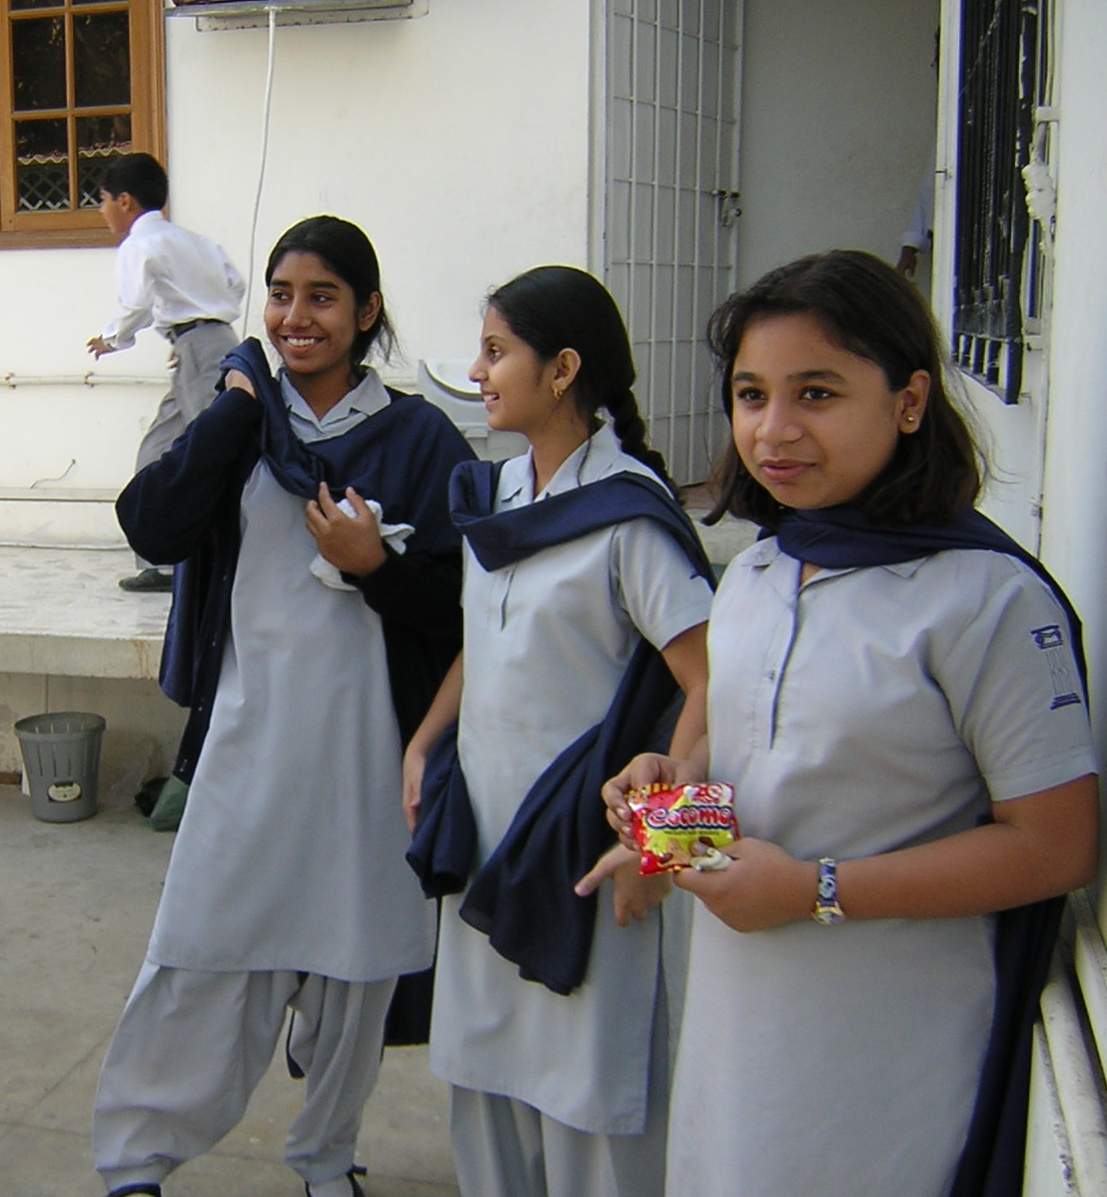 School pakistan teen porn images